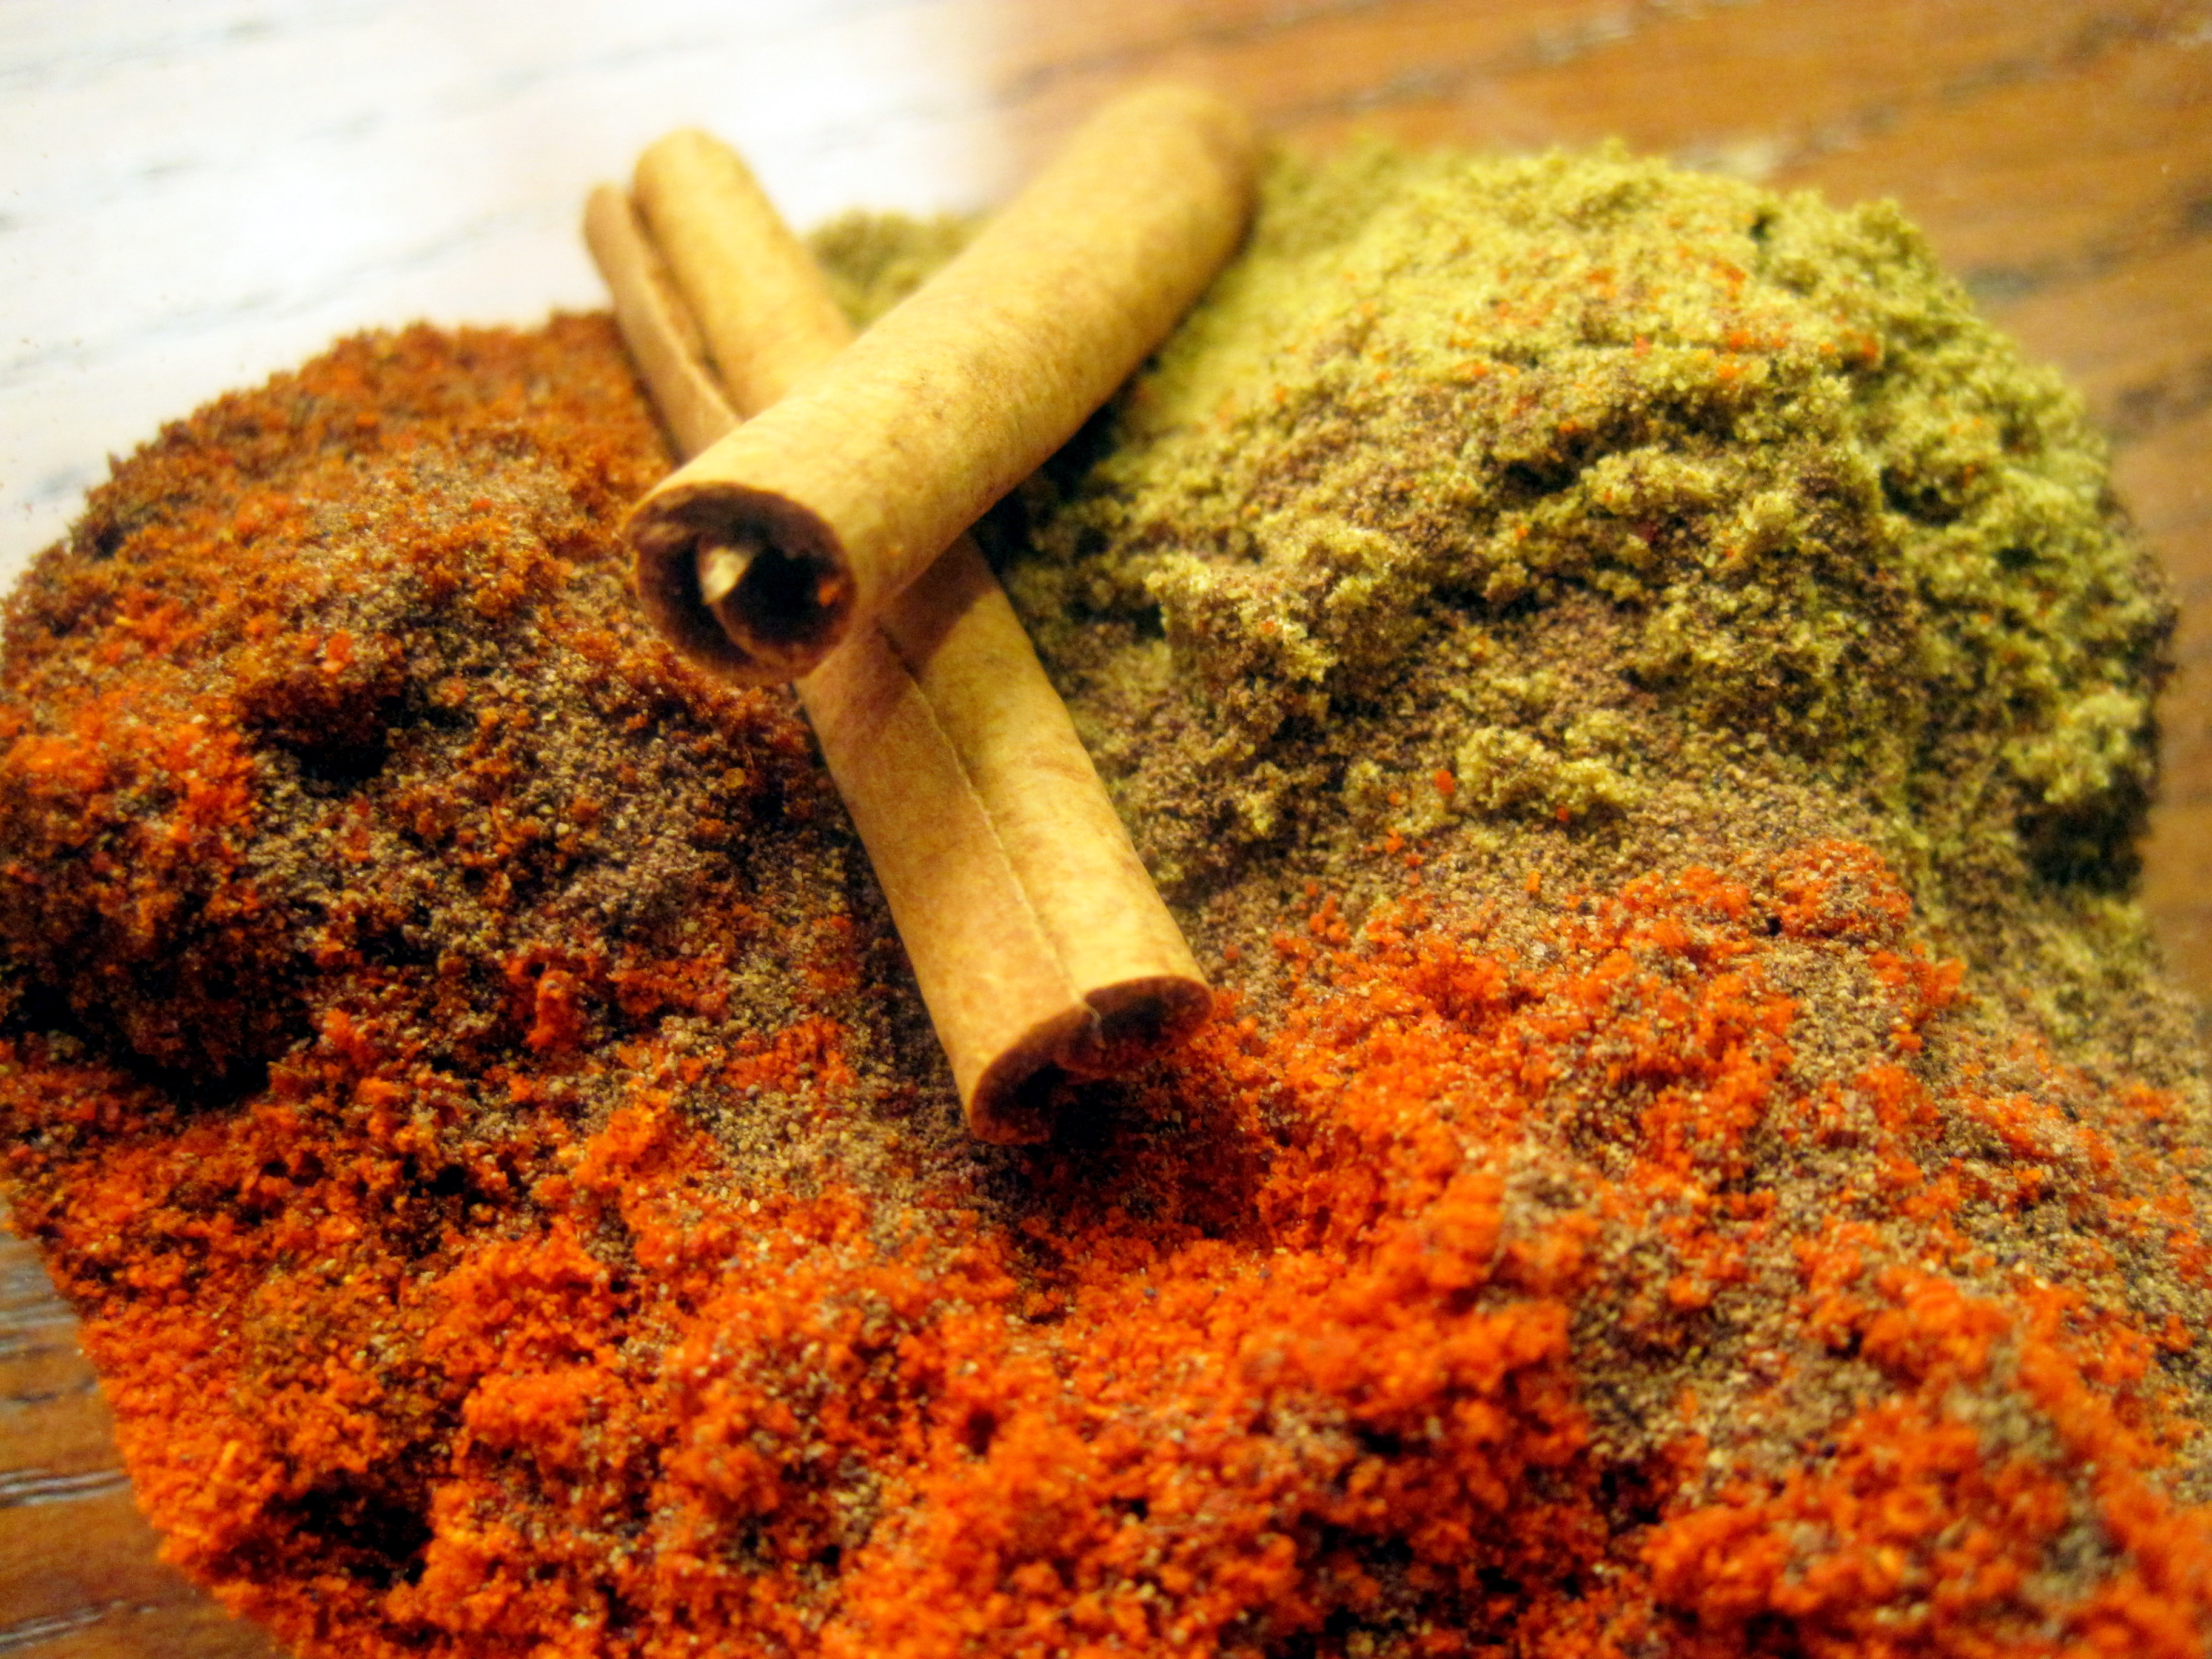 Chili Spices